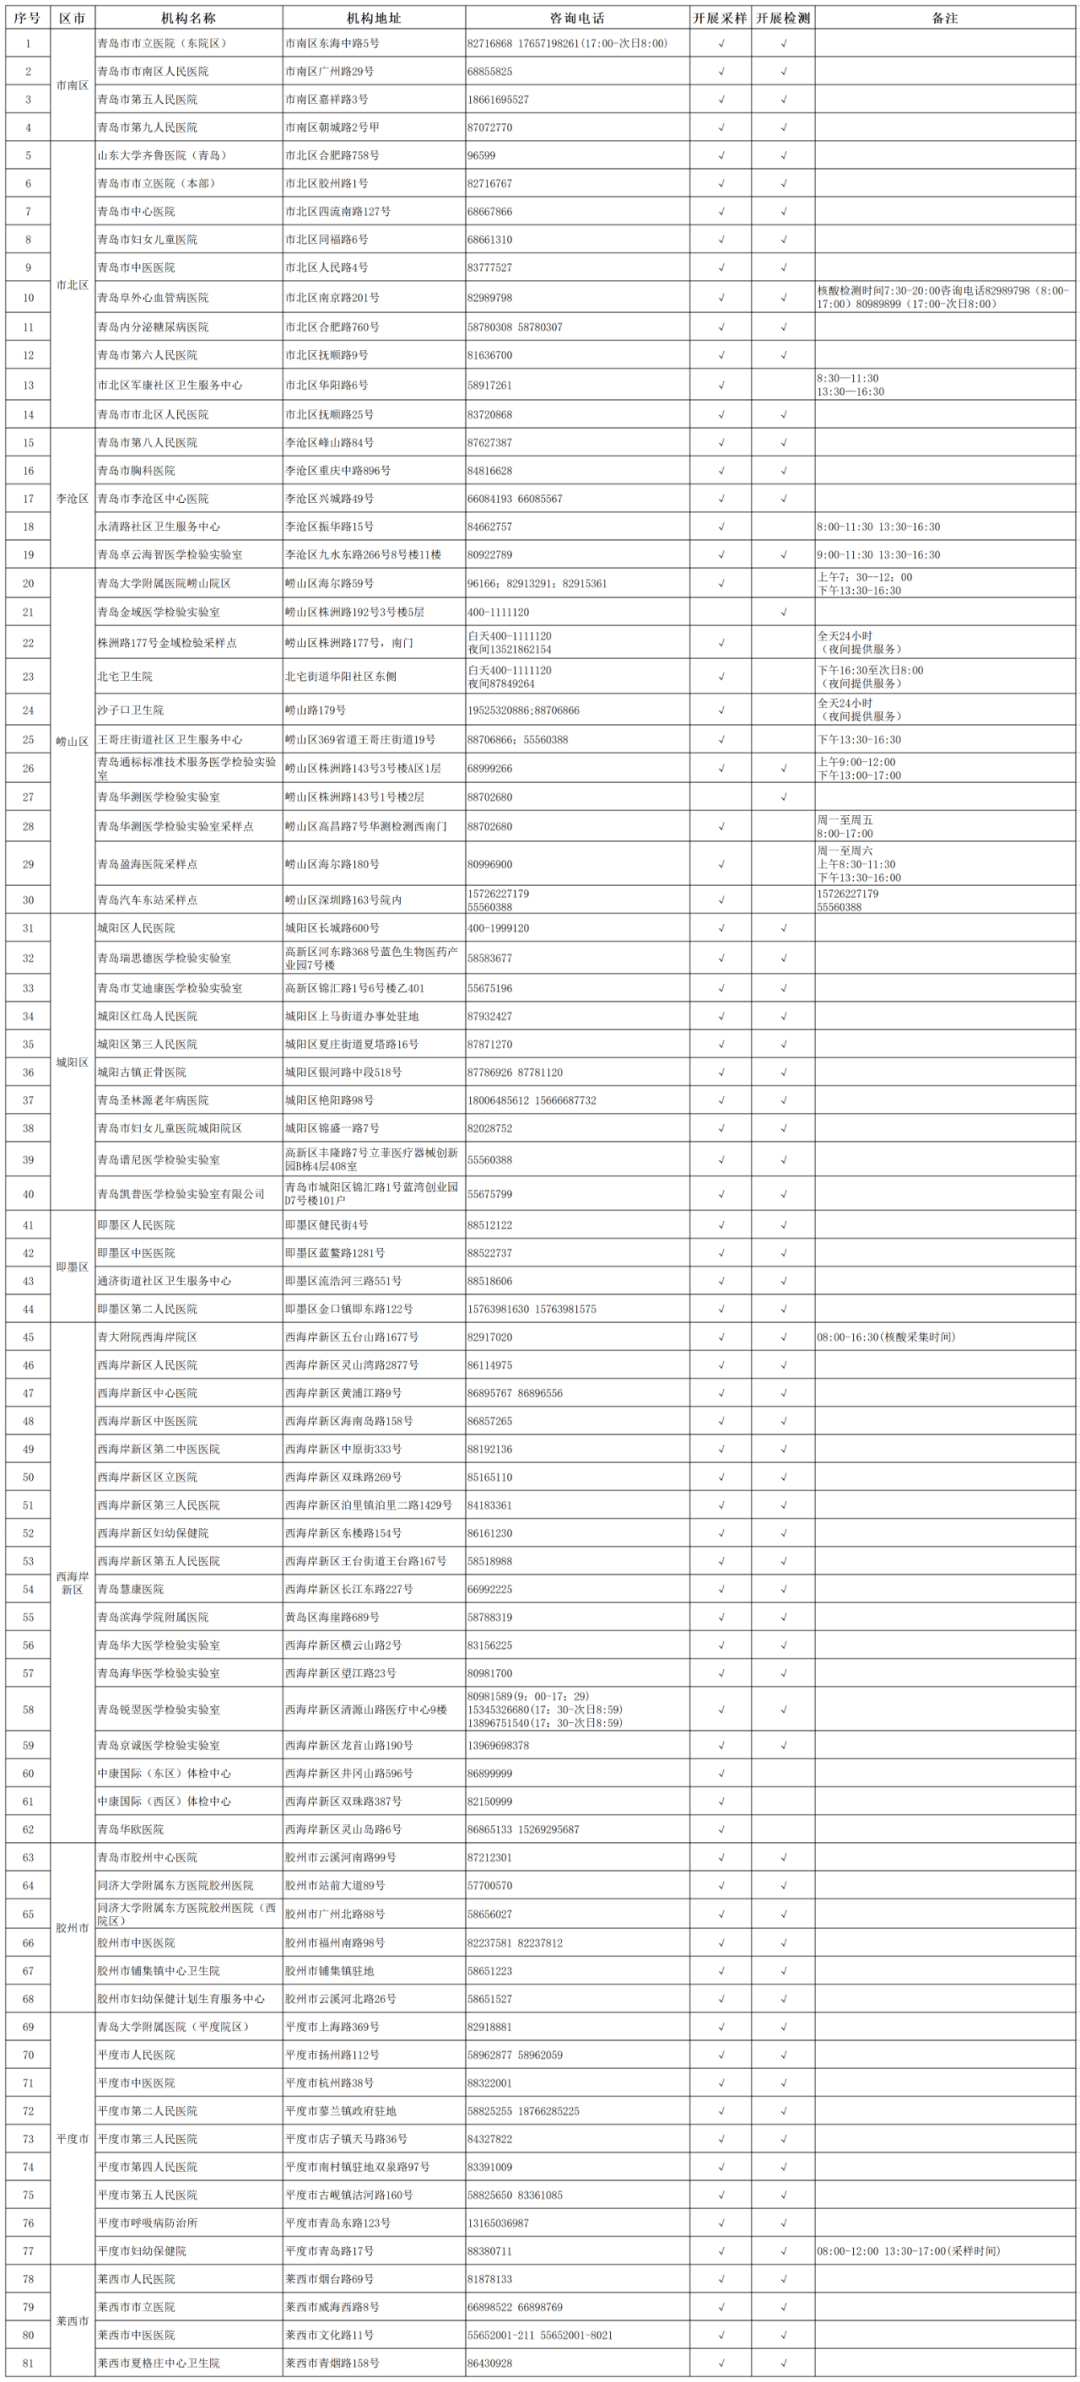 青岛市新冠病毒核酸采样点、核酸检测机构信息一览表（截至2022年3月14日）